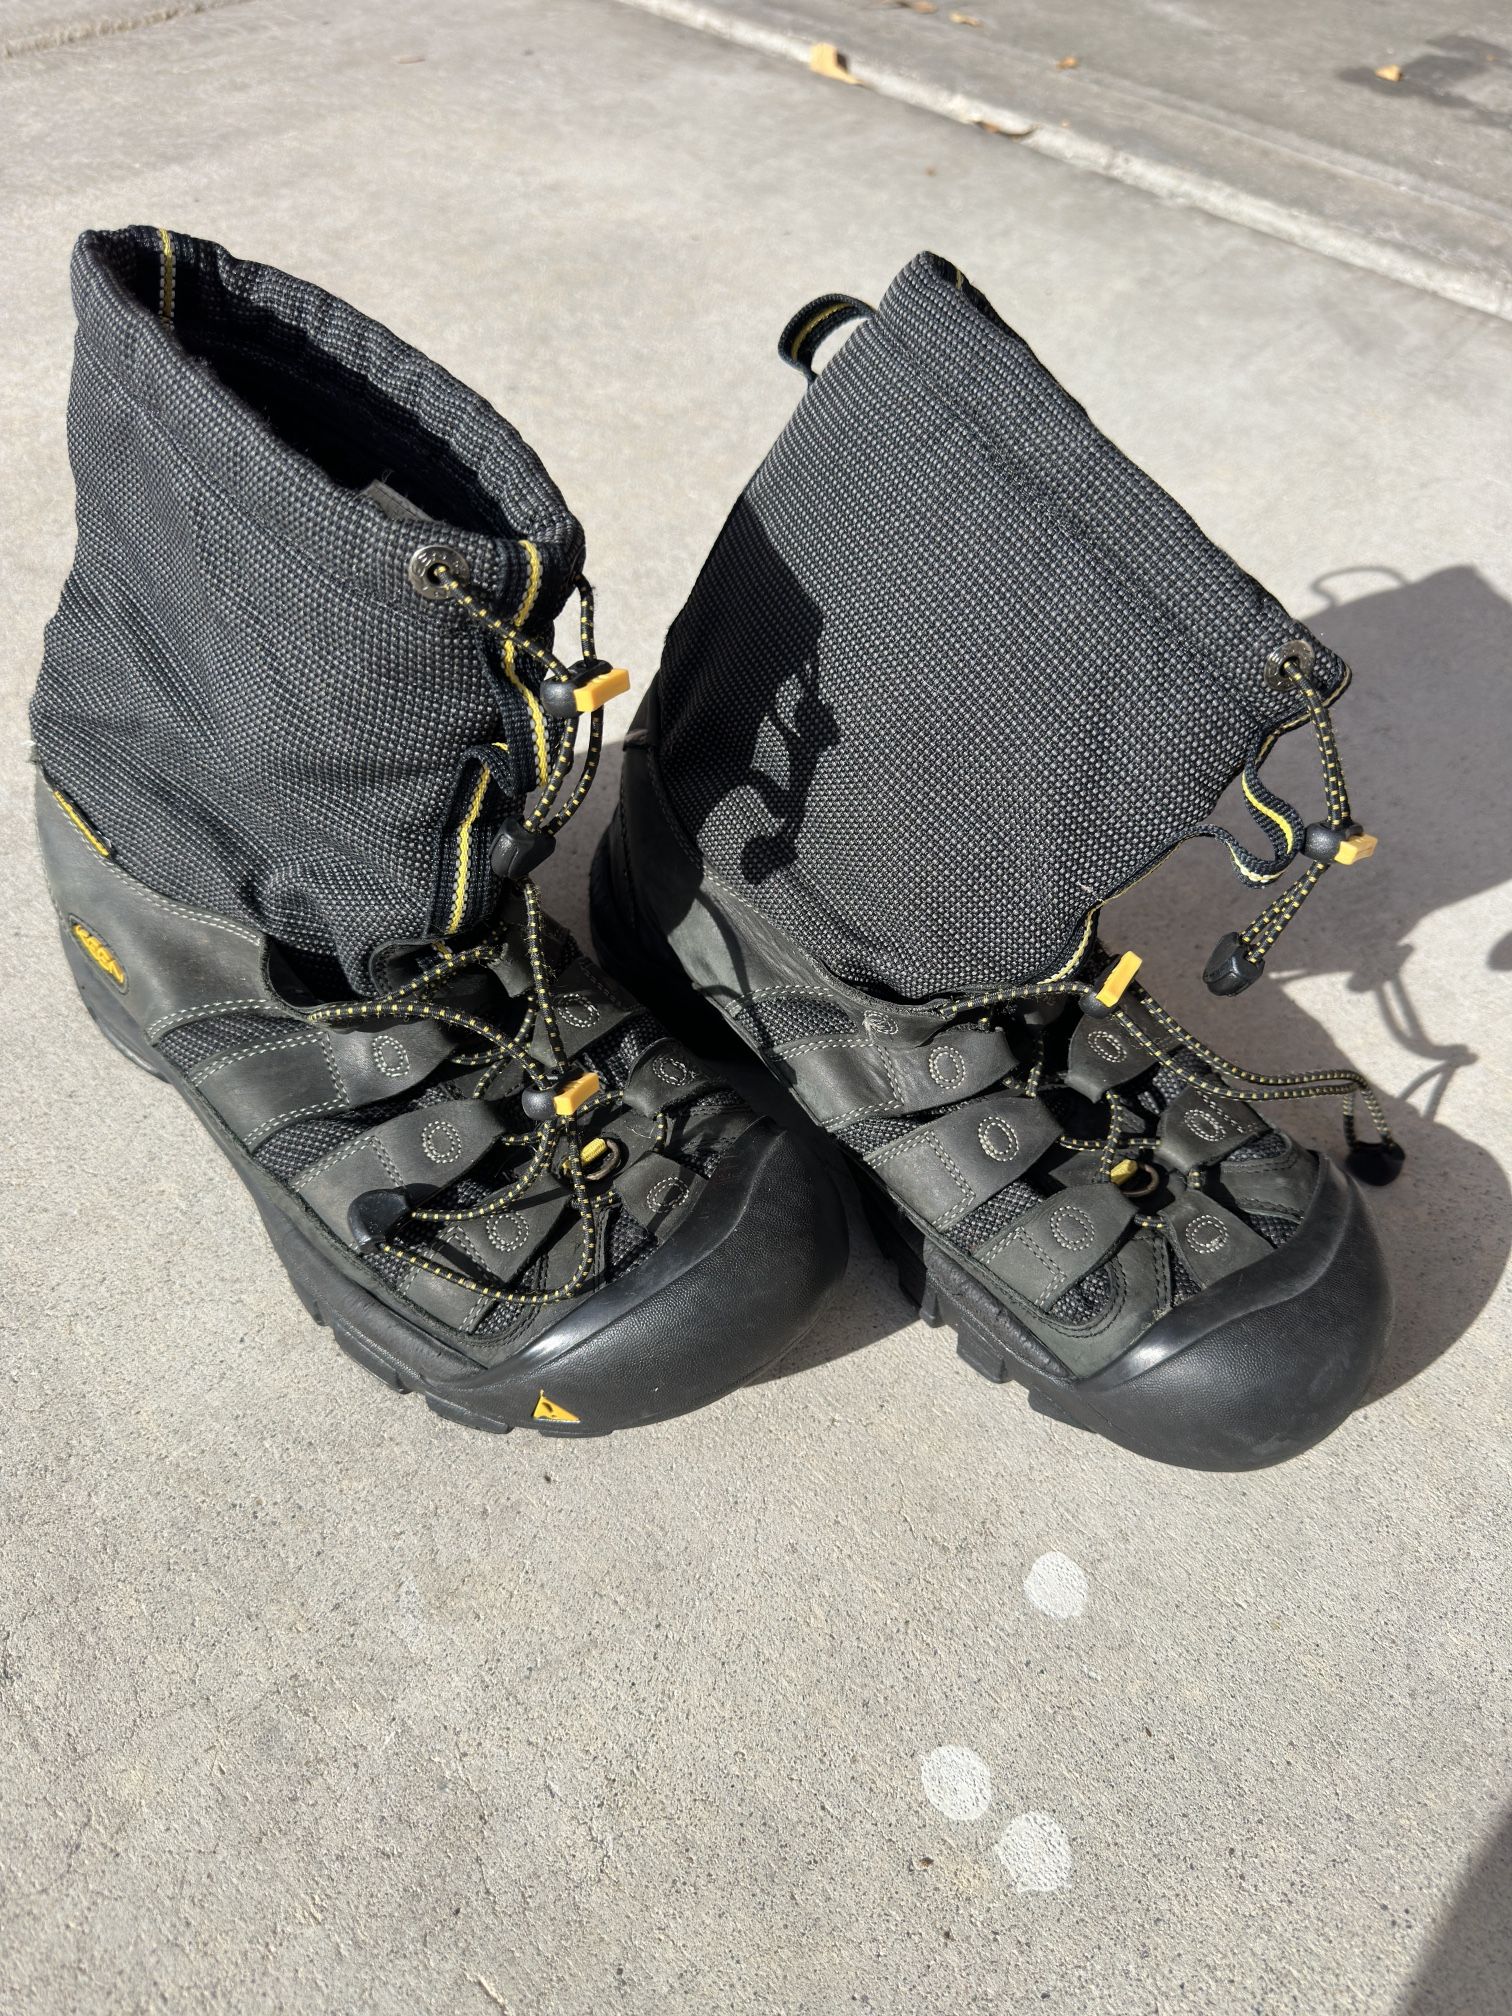 Keen Waterproof Boots